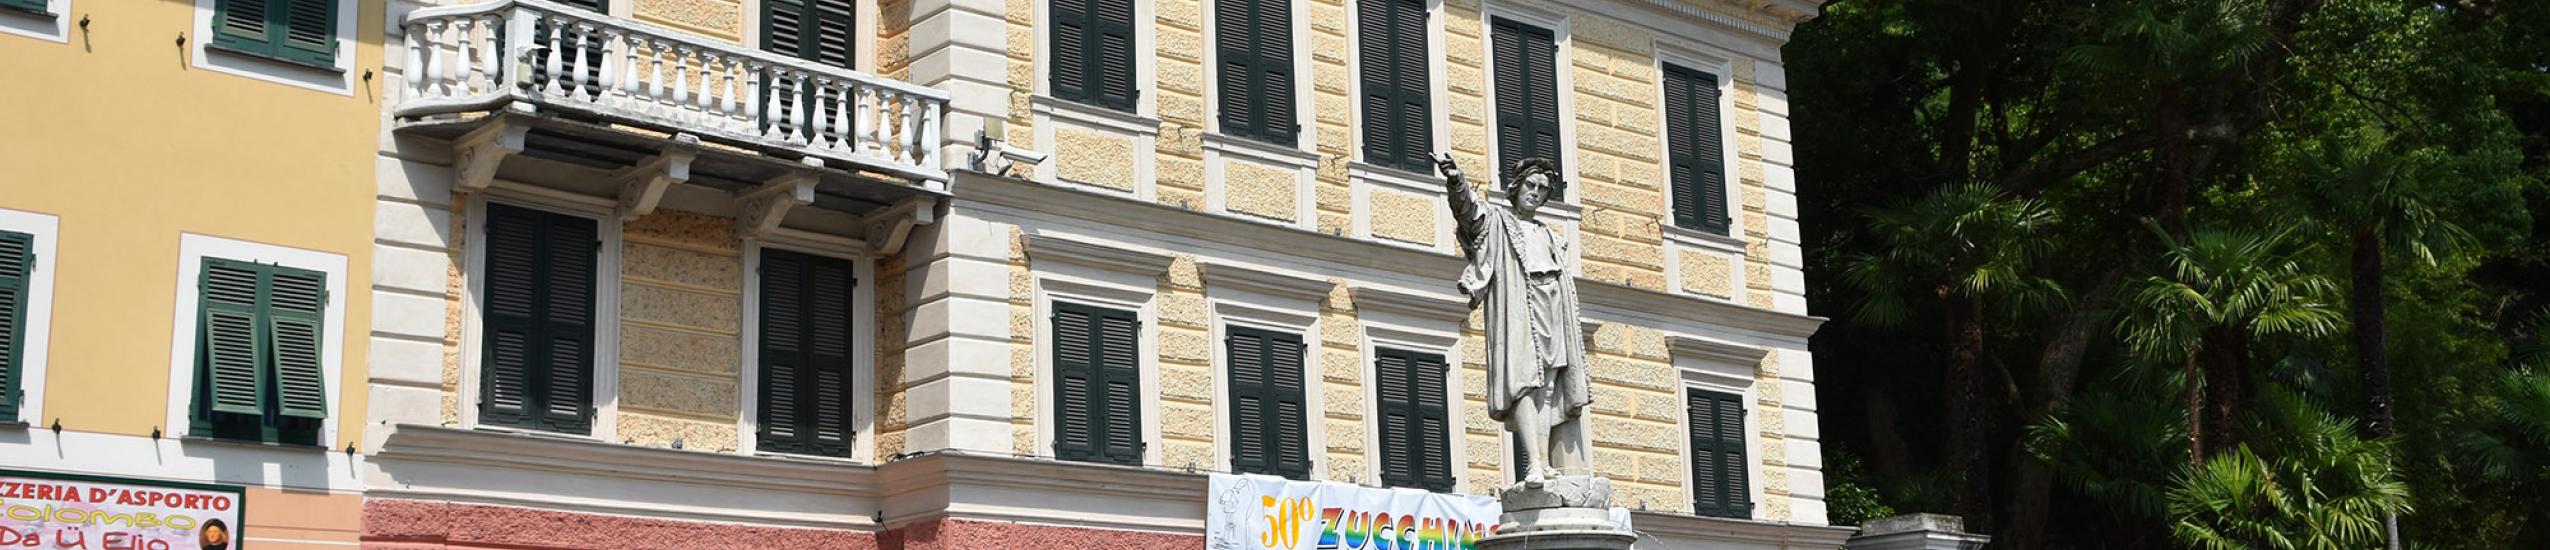 Villa Cavagnari affacciata su piazza Colombo